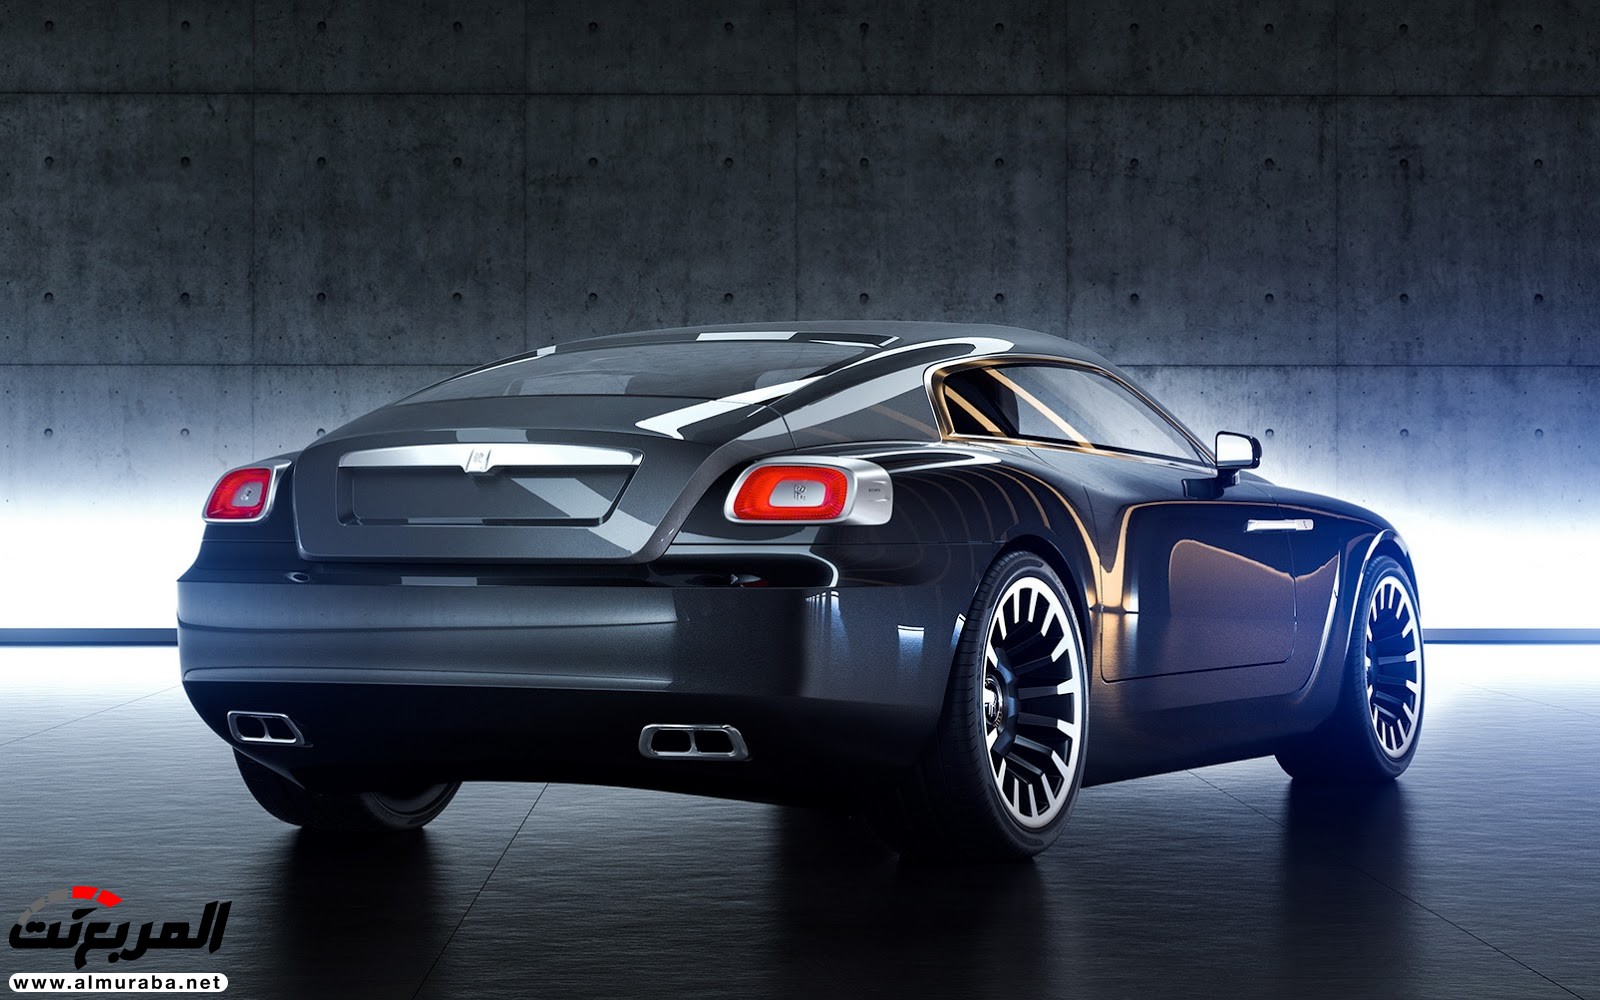 "صور افتراضية" لما يمكن أن تبدو عليه "رولز رويس" رايث كوبيه 2020 Rolls-Royce Wraith Coupe 58